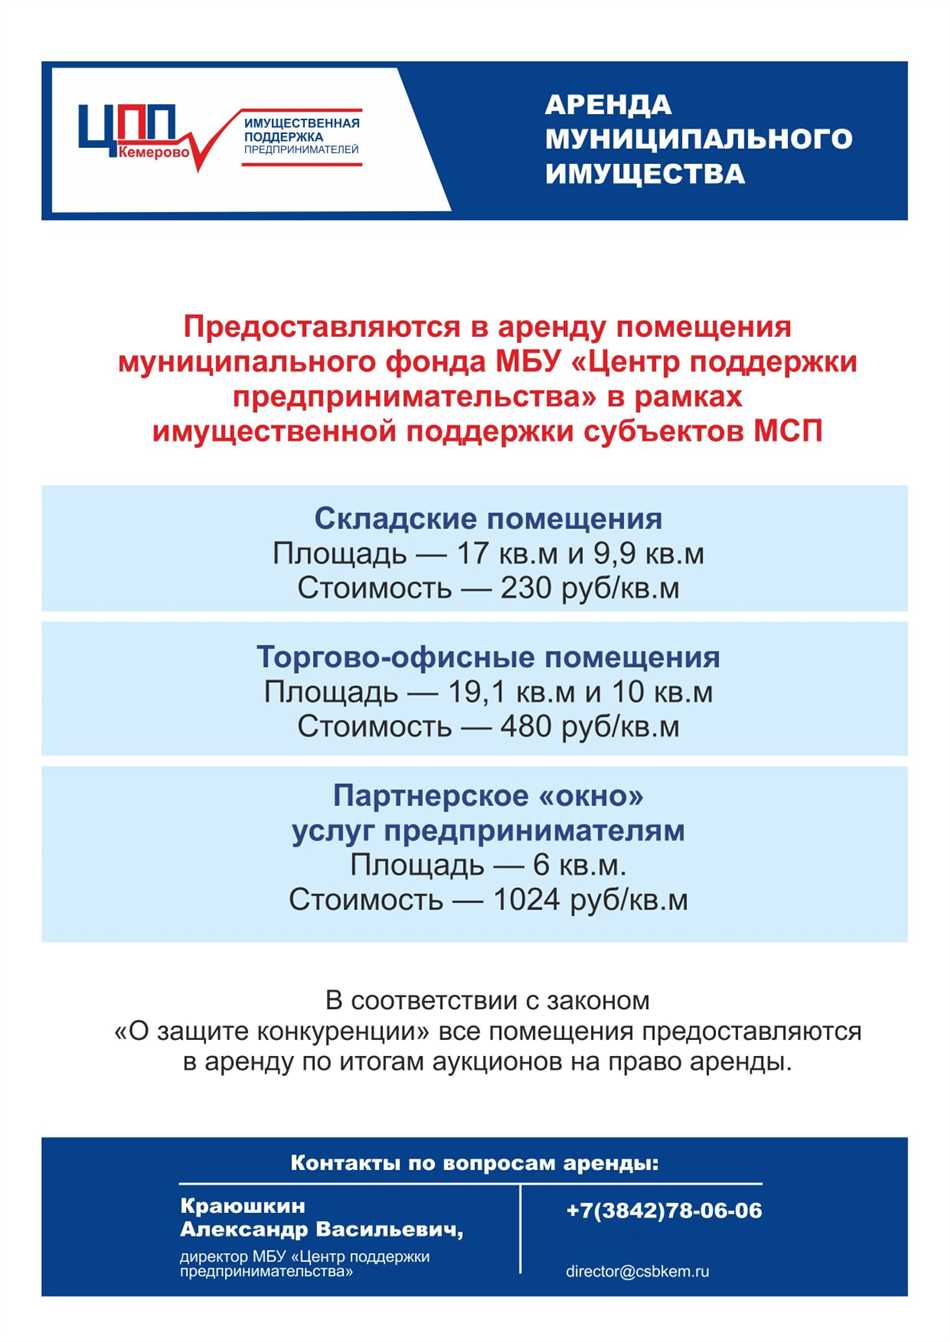 Оформление билета по ФСС на РЖД: подробная информация и инструкции